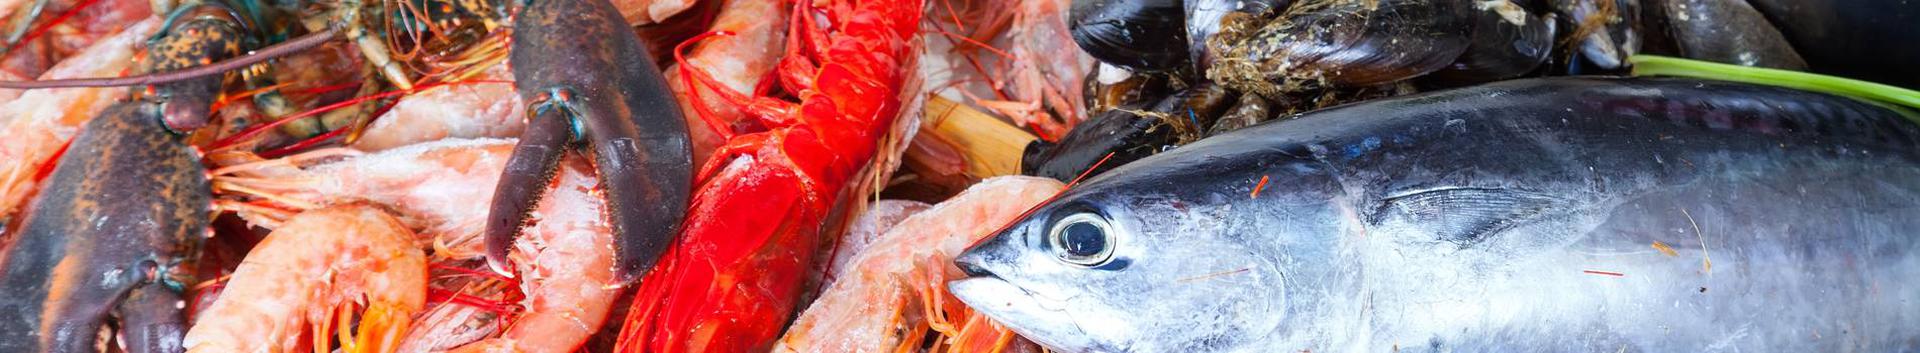 OÜ Meremill asutati 2018 aastal. Põhitegevus OÜ Meremill on kala-ja kalatoodete müük.